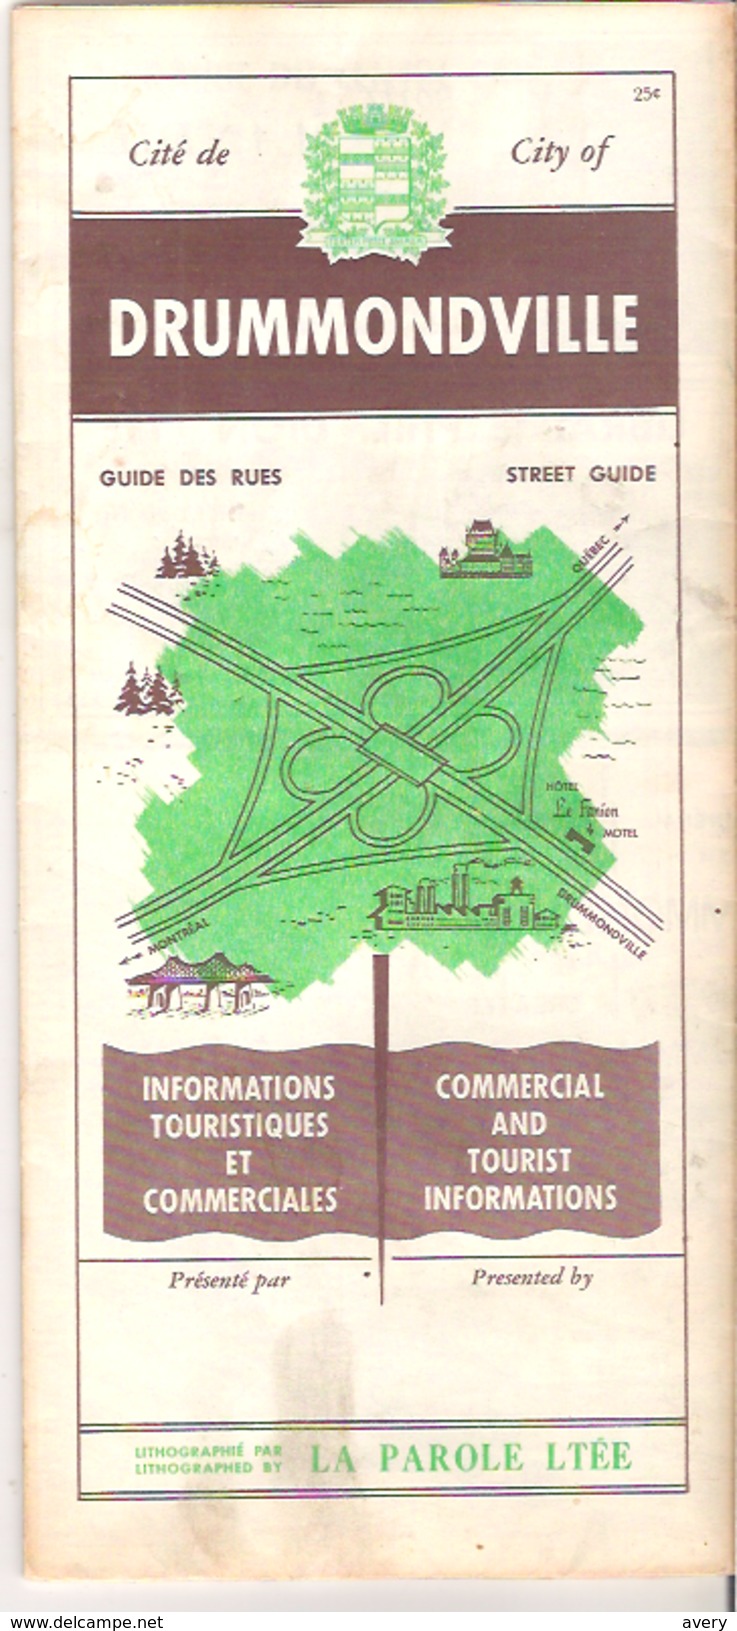 Cite De Drummondville  City Of Drummondville, Quebec, Canada - Tourism Brochures